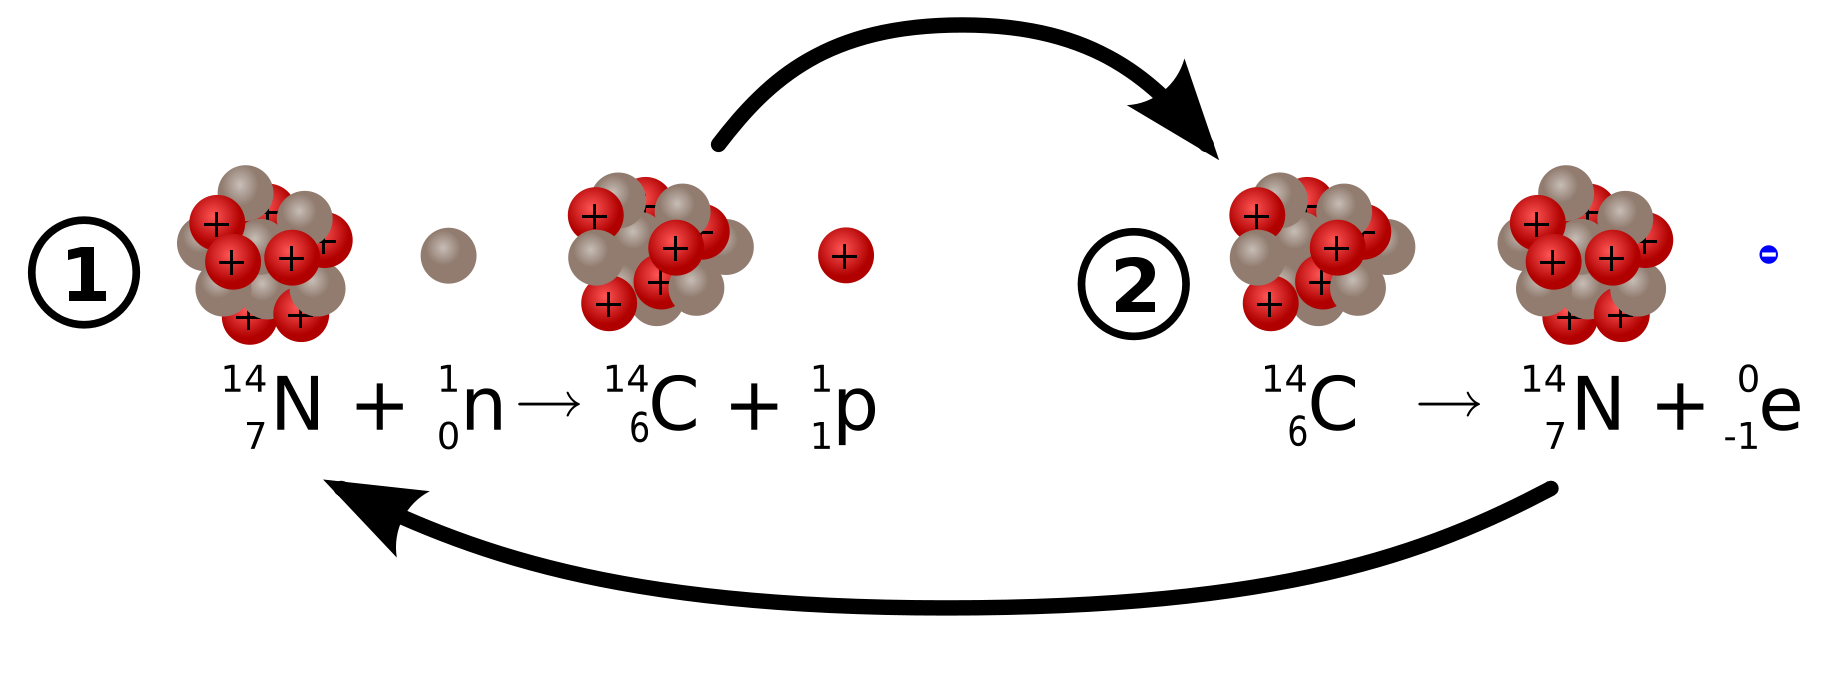 Схема распада углерода 14. Схемы радиоактивного распада углерода 14. Изотоп углерода радиоактивный распад.